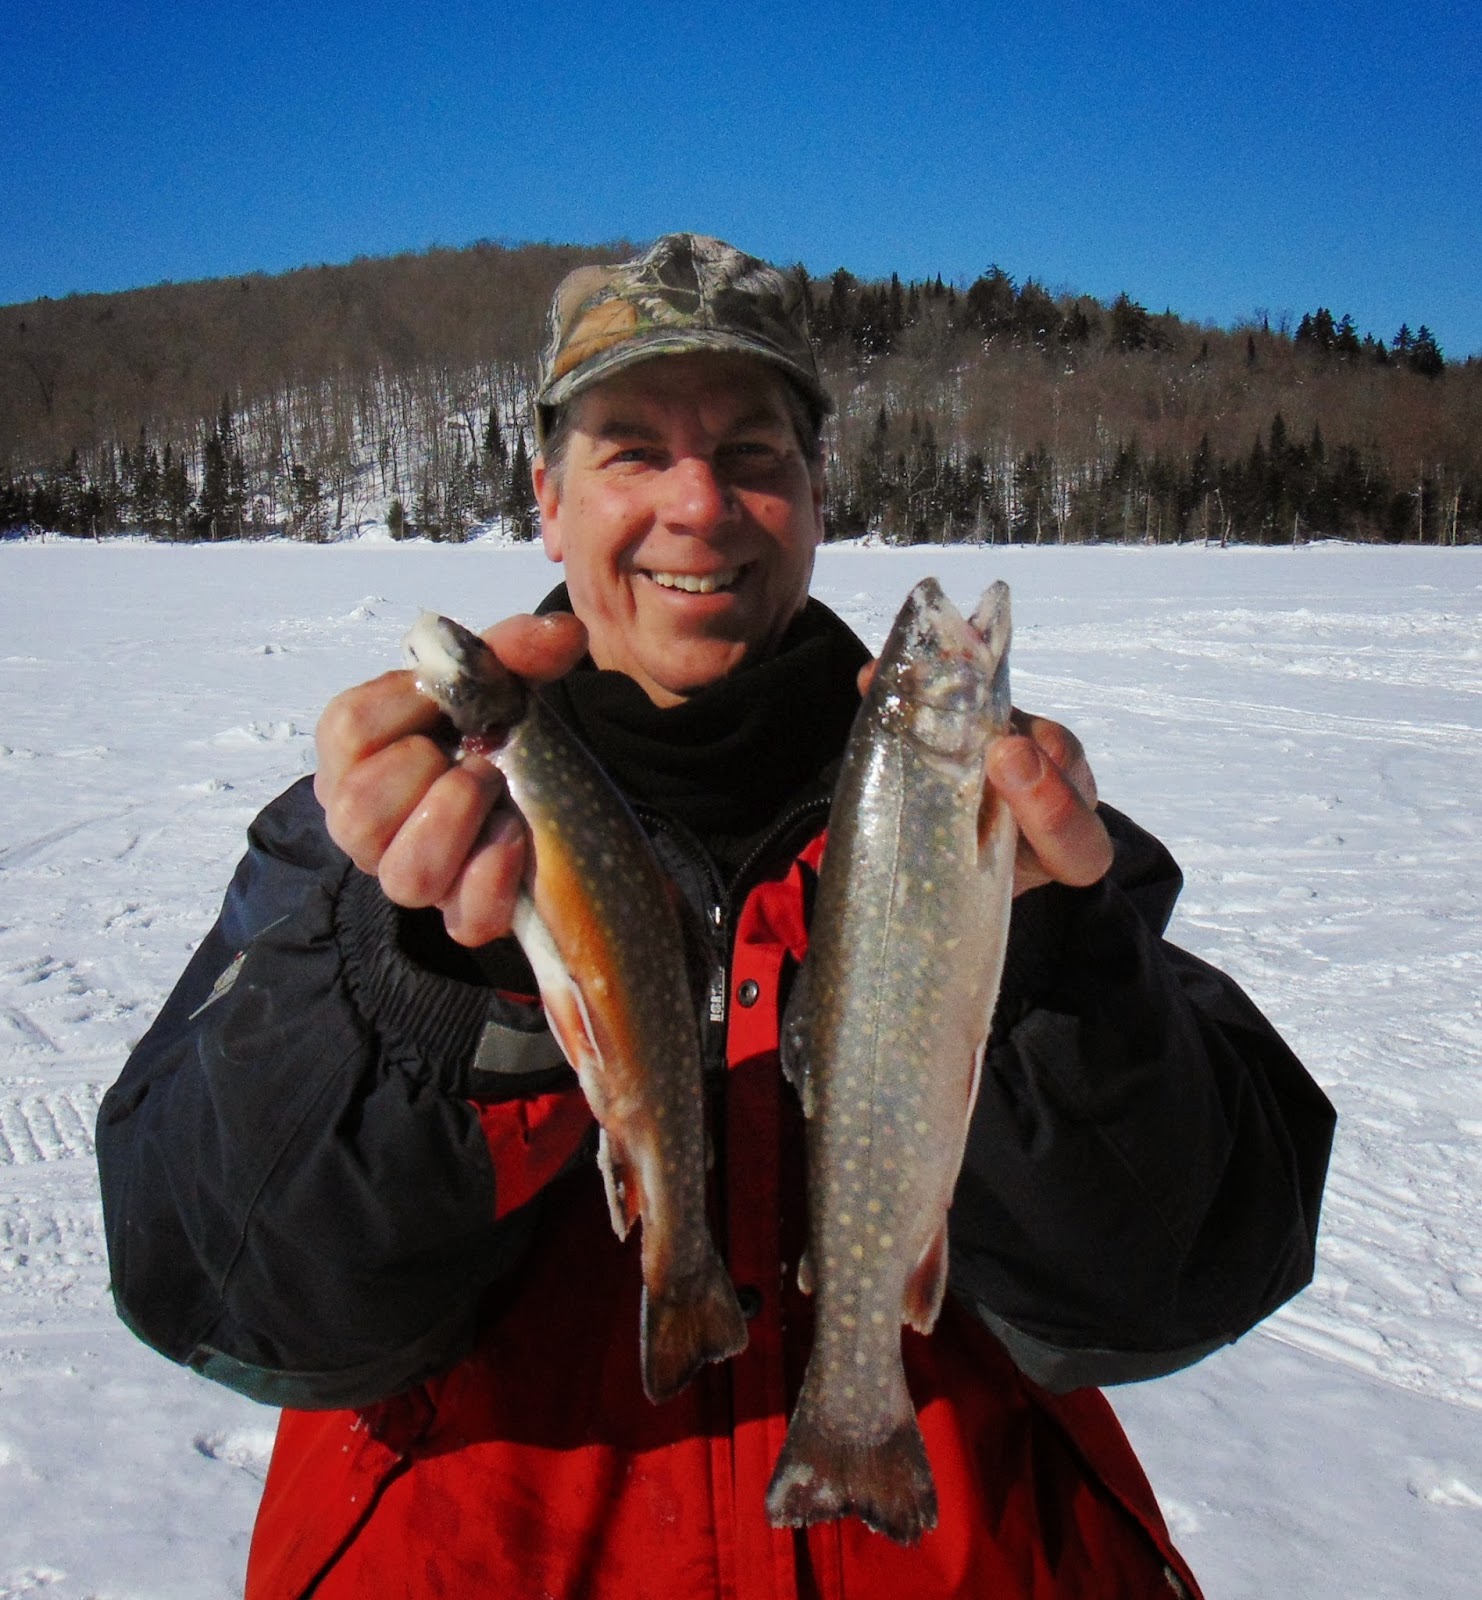 Pêche truite mouchetée en hiver, pêche omble de fontaine sur glace, Daniel Lefaivre, blogue de pêche